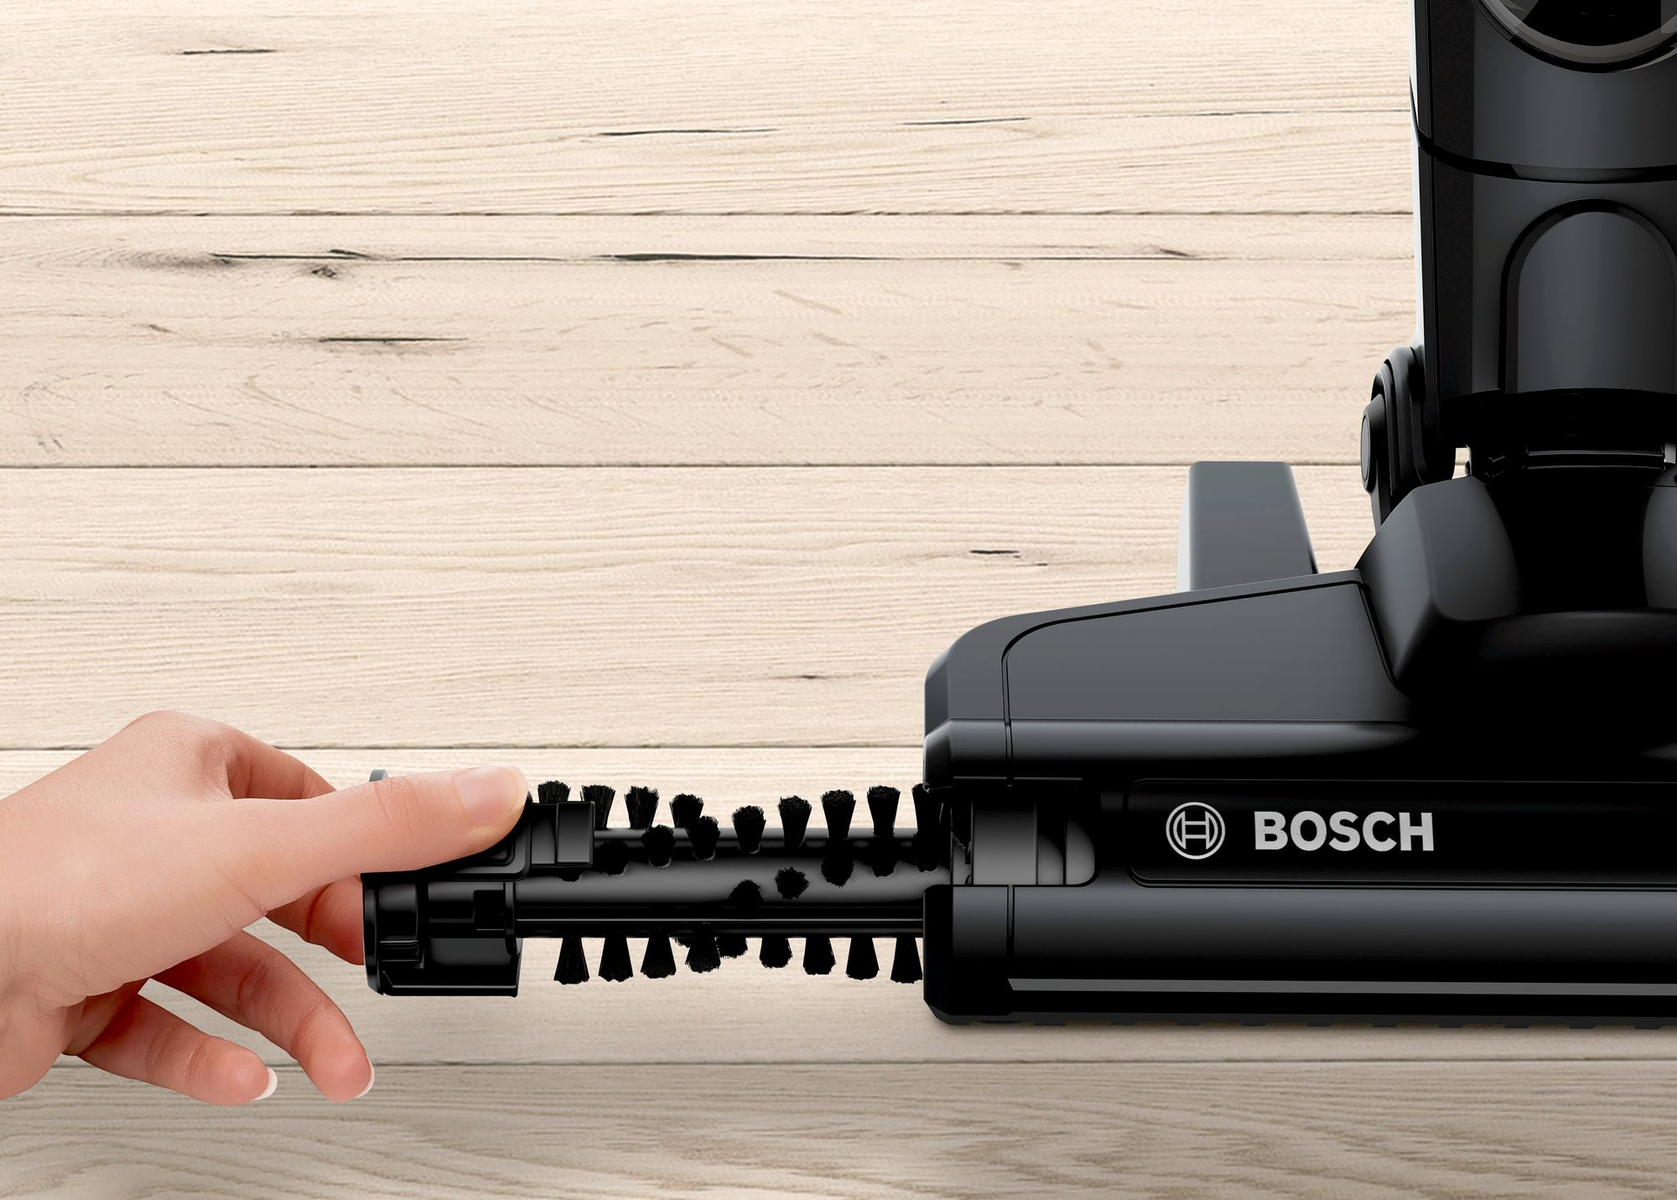 BOSCH HOGAR Bosch Serie 2 Schwarz Watt Batteriebetrieb, 20 Handstaubsauger, BBHF220 Handstaubsauger Beutellos